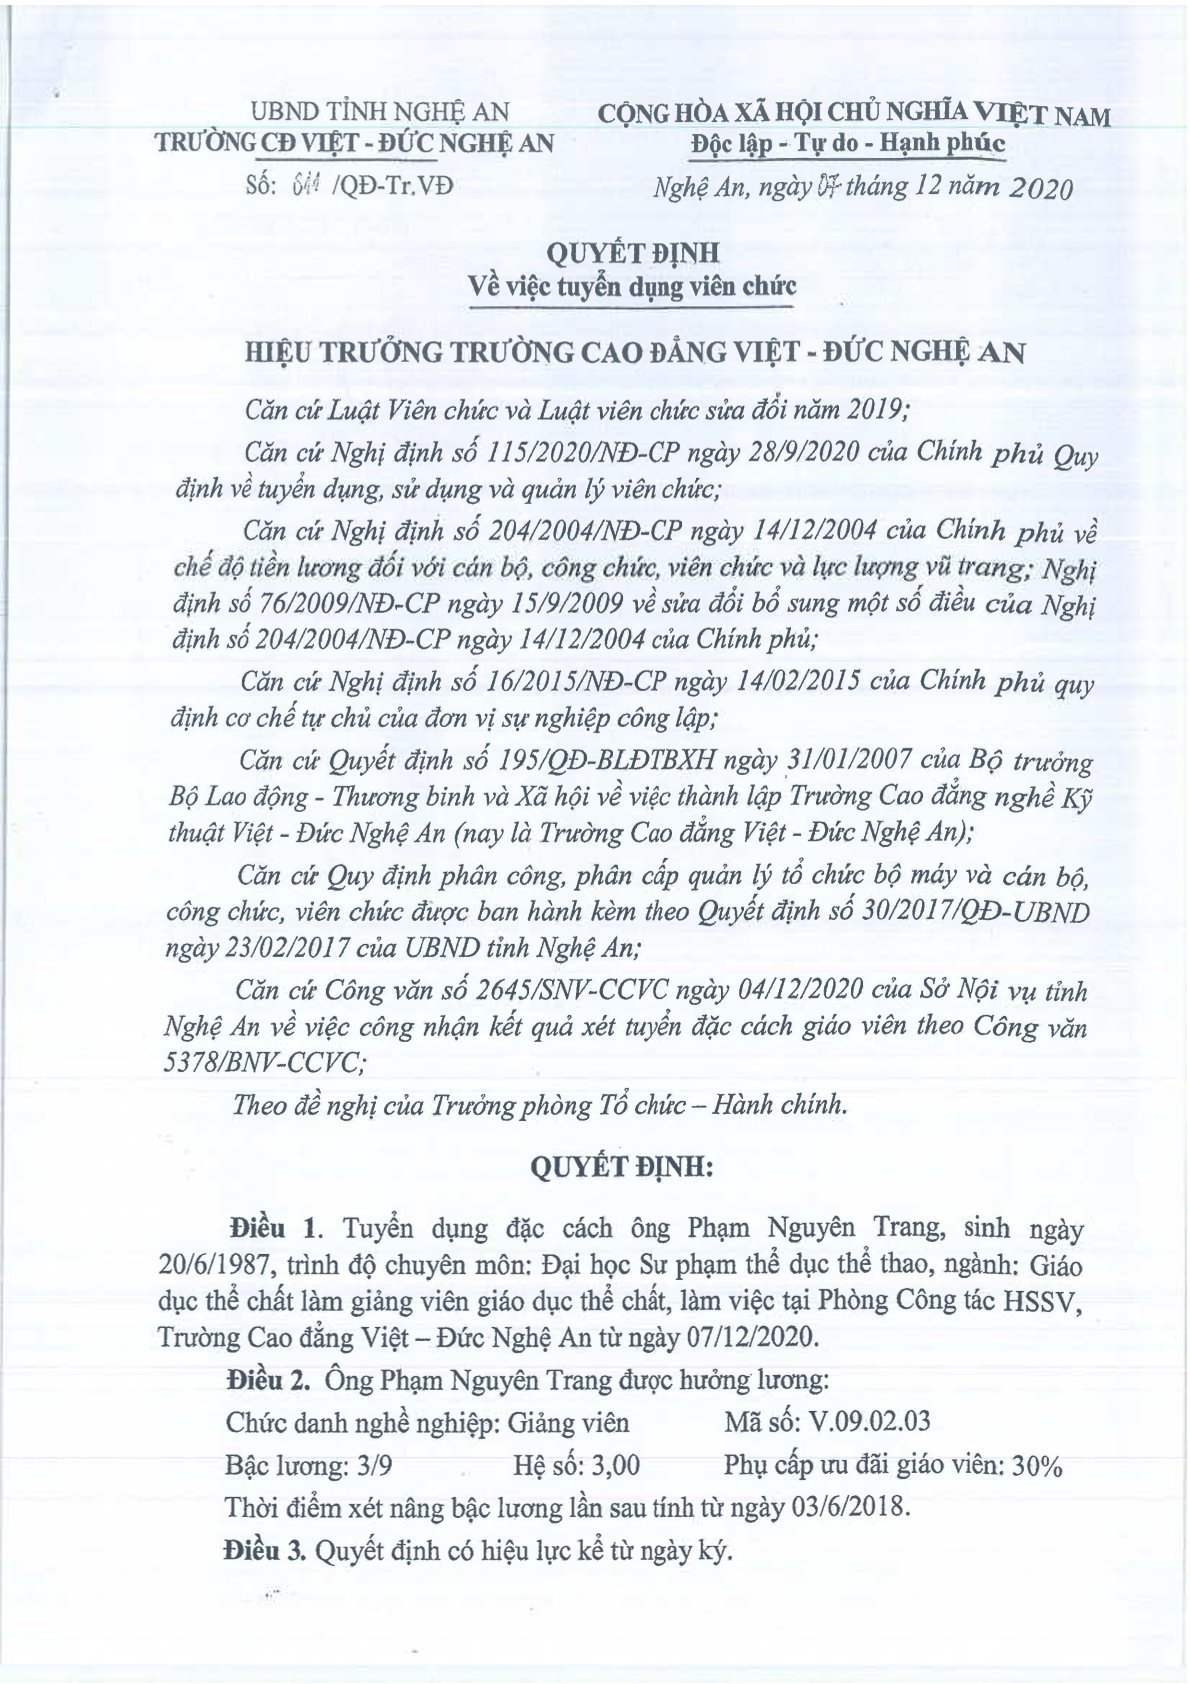 Quyết định số 811/QĐ-Tr.VĐ ngày 07/12/2020 của Trường Cao đẳng Việt - Đức Nghệ An về việc tuyển dụng viên chức